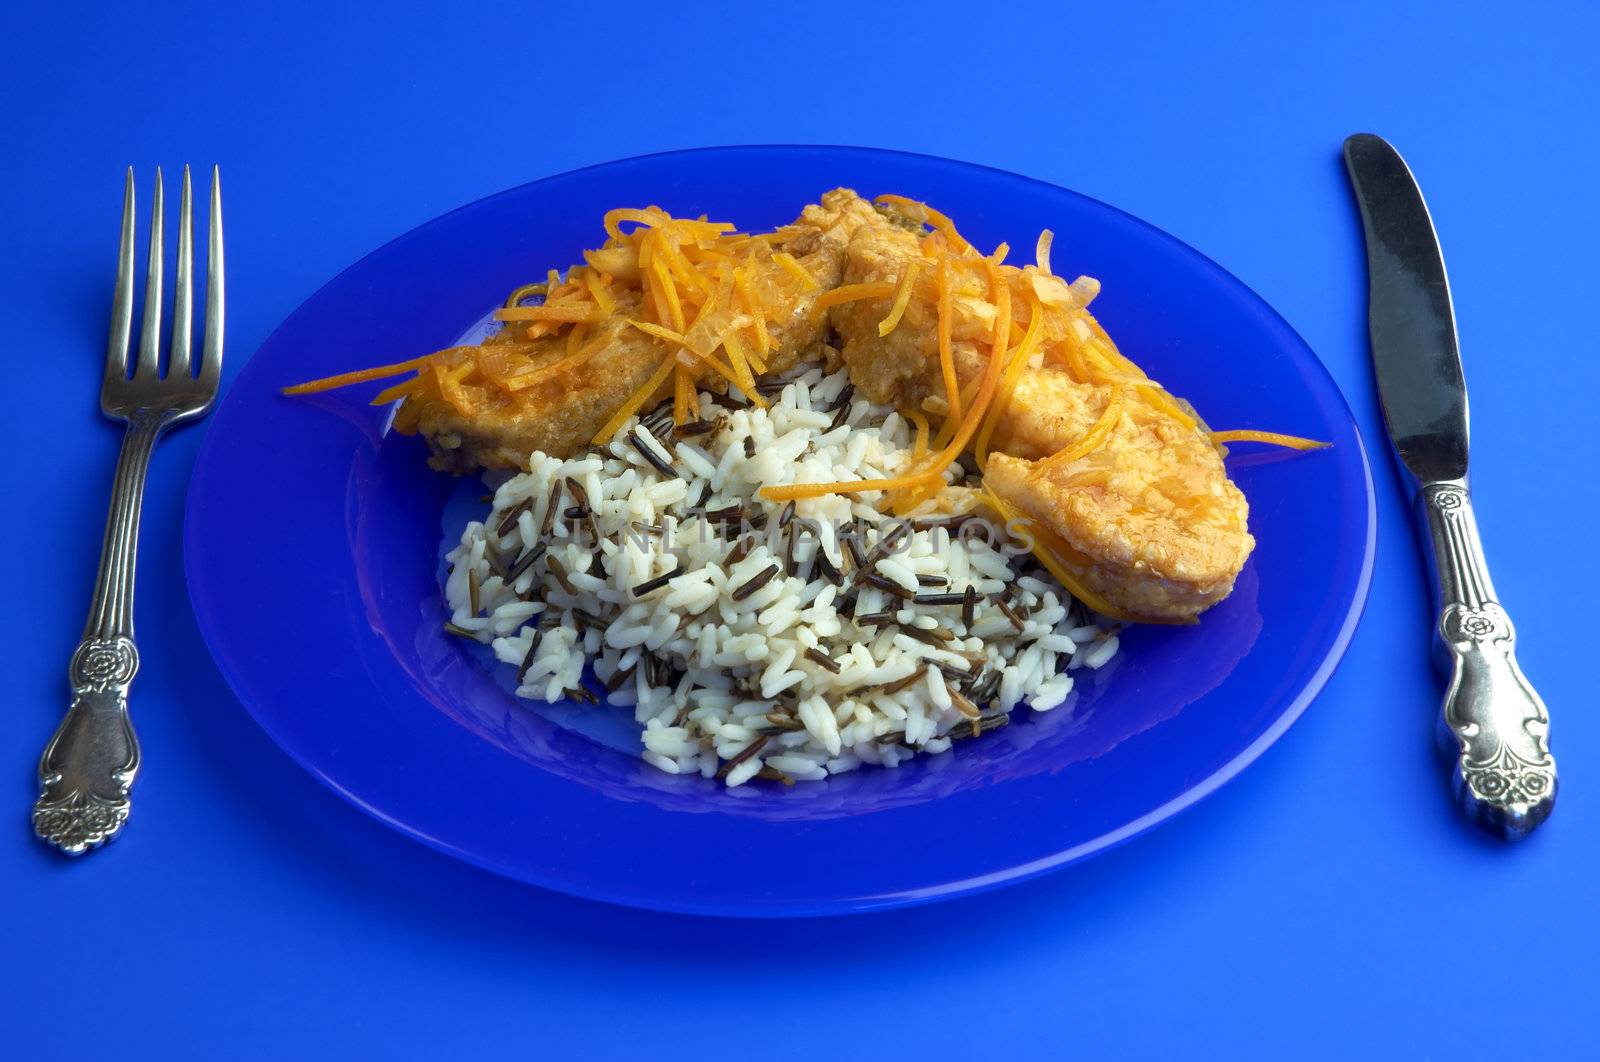 cartilaginous fish and rice by Kuzma